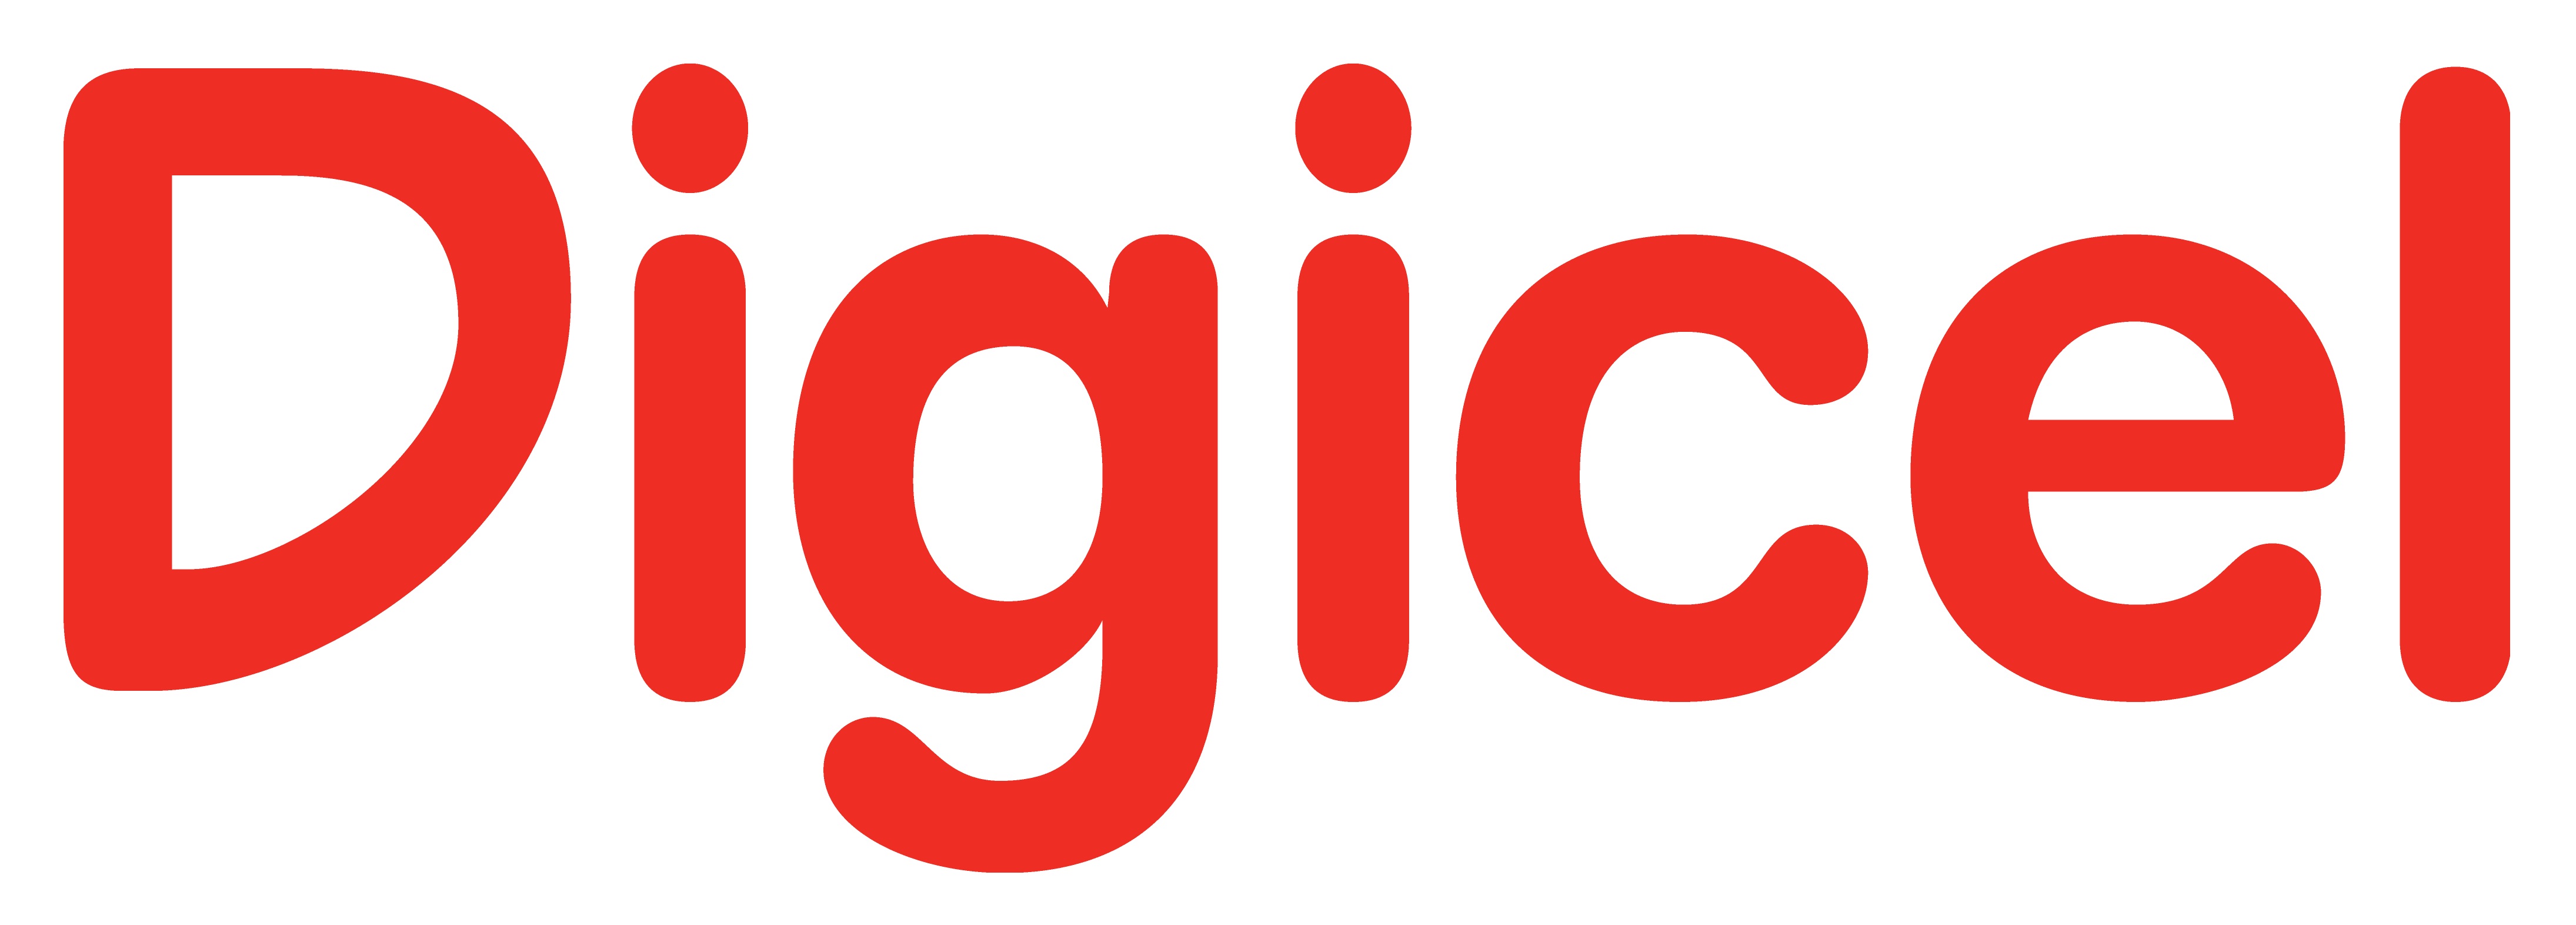     La restructuration de Digicel est en marche

